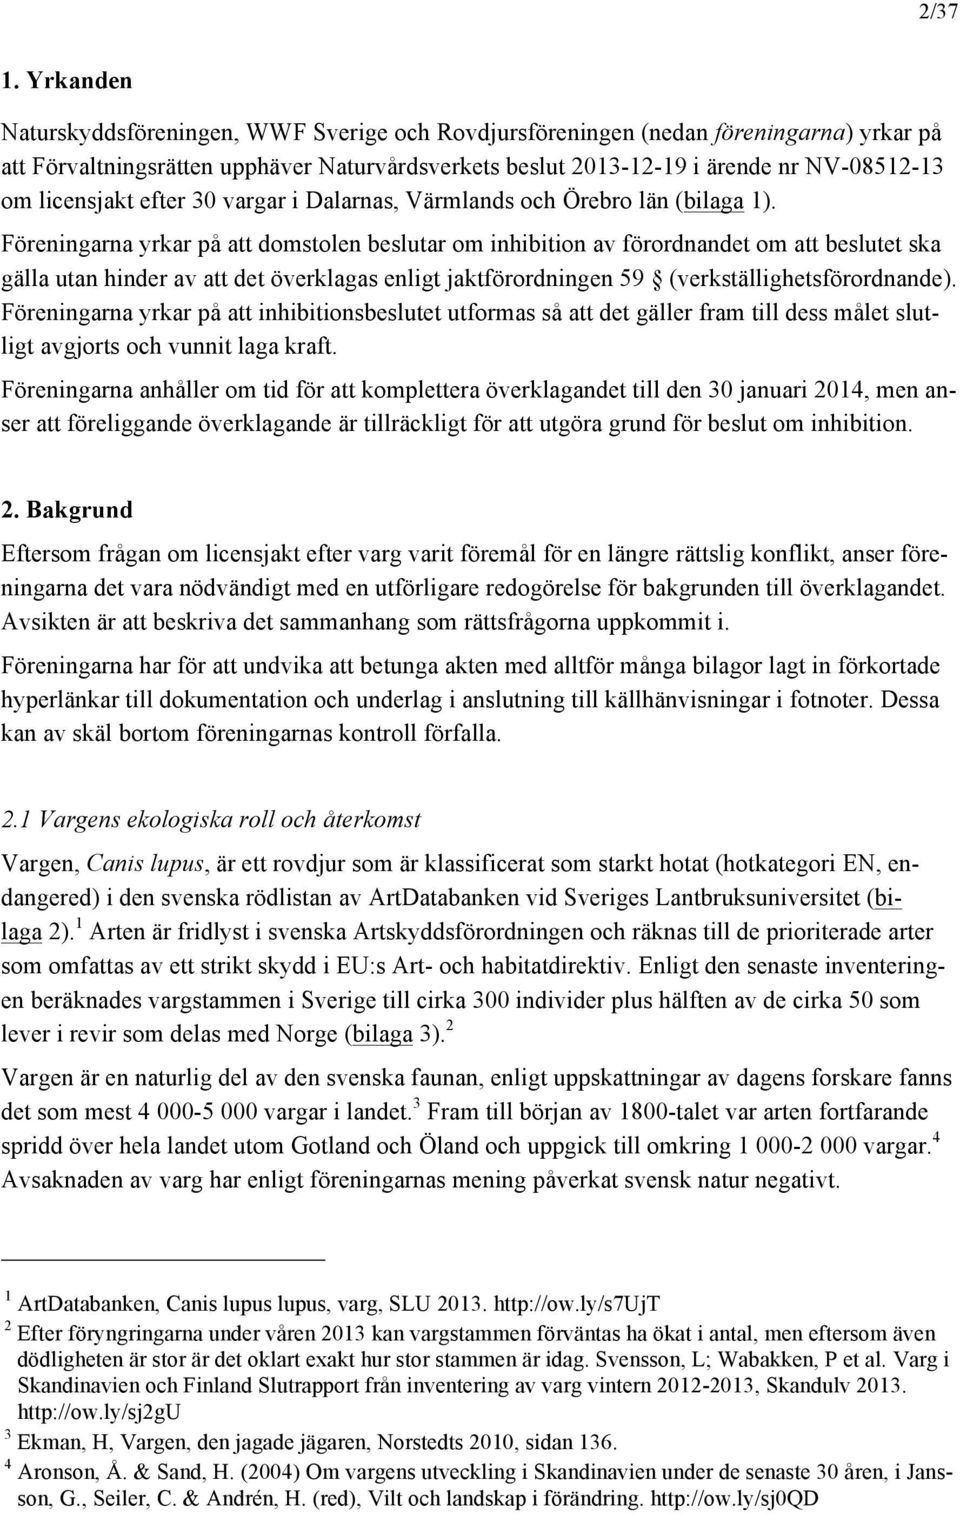 licensjakt efter 30 vargar i Dalarnas, Värmlands och Örebro län (bilaga 1).